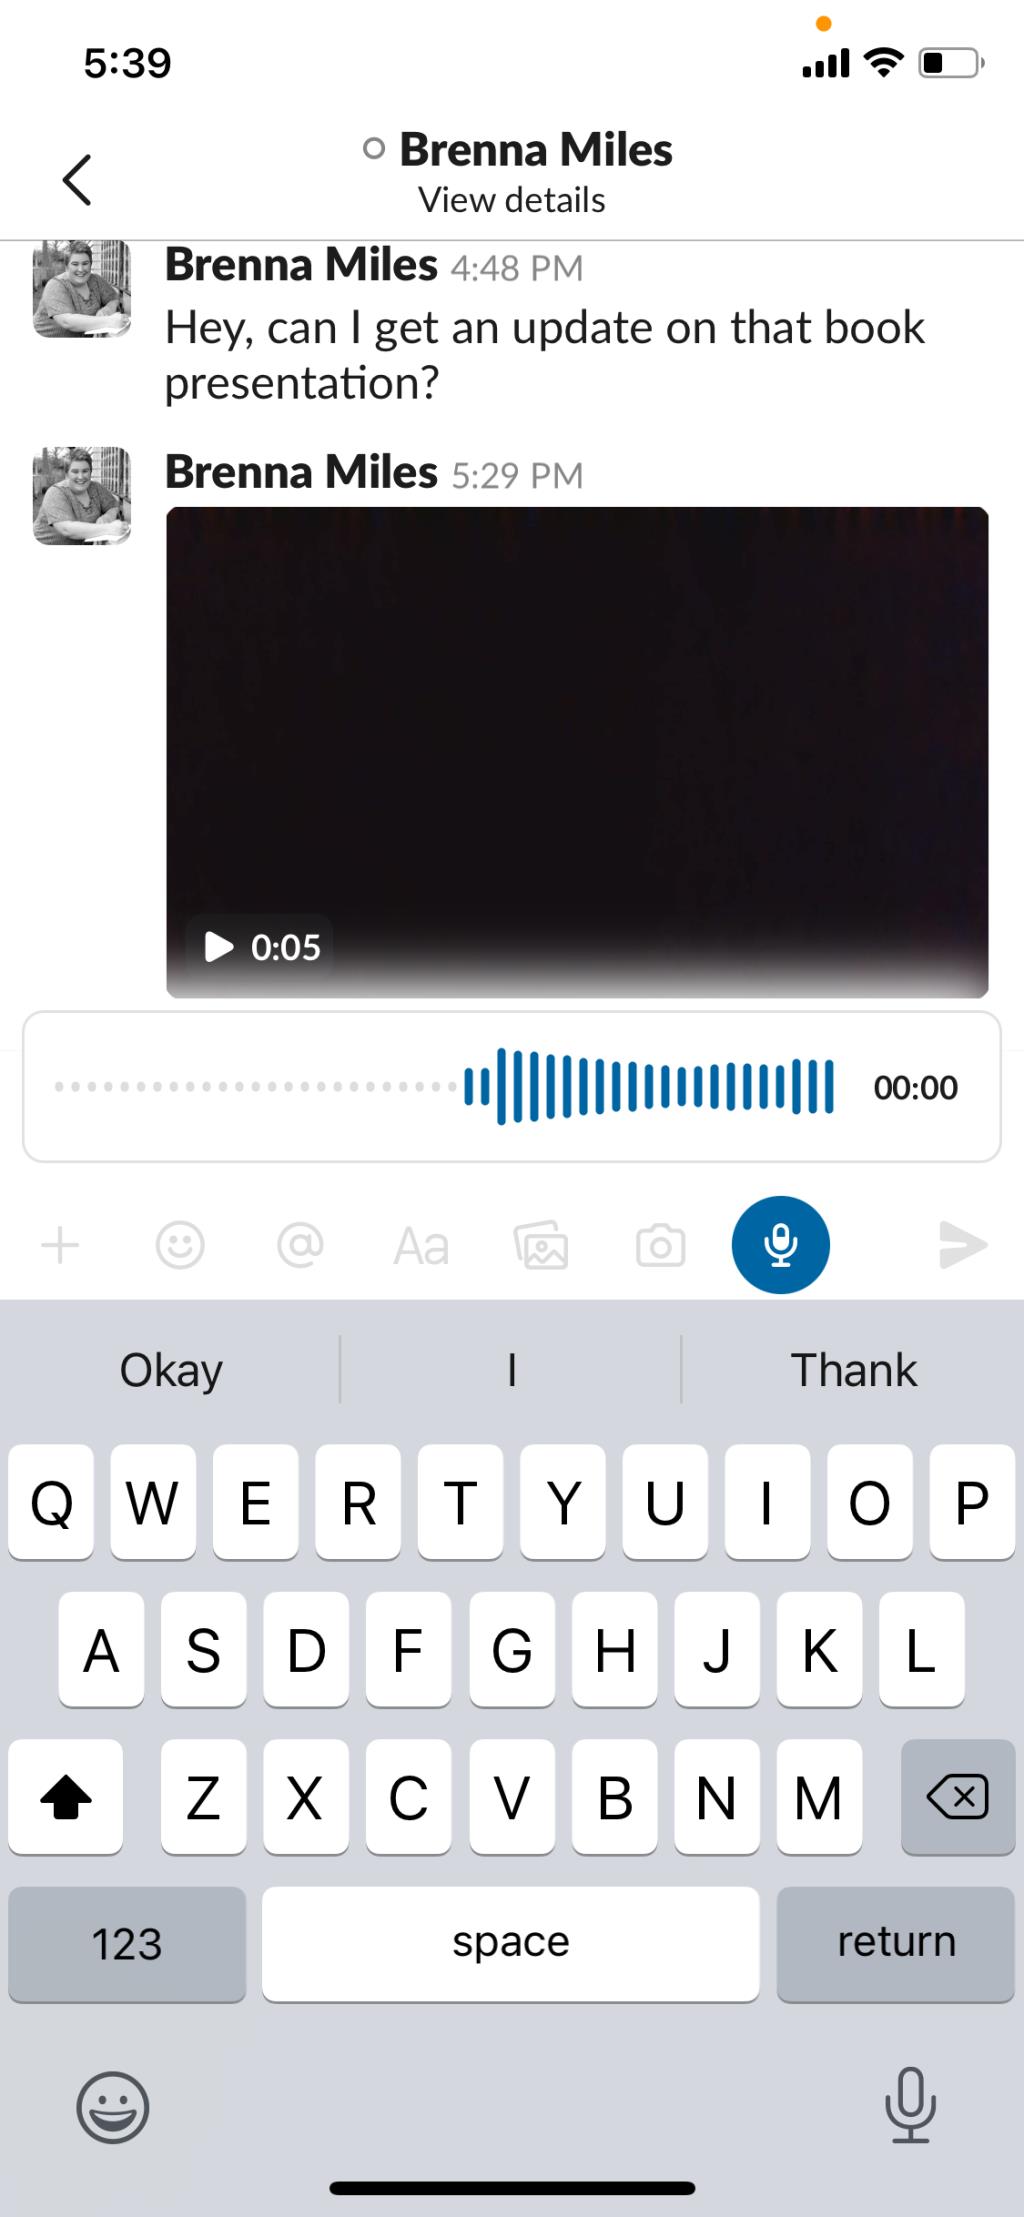 Slack Clips gebruiken om snel en gemakkelijk met collega's te communiceren